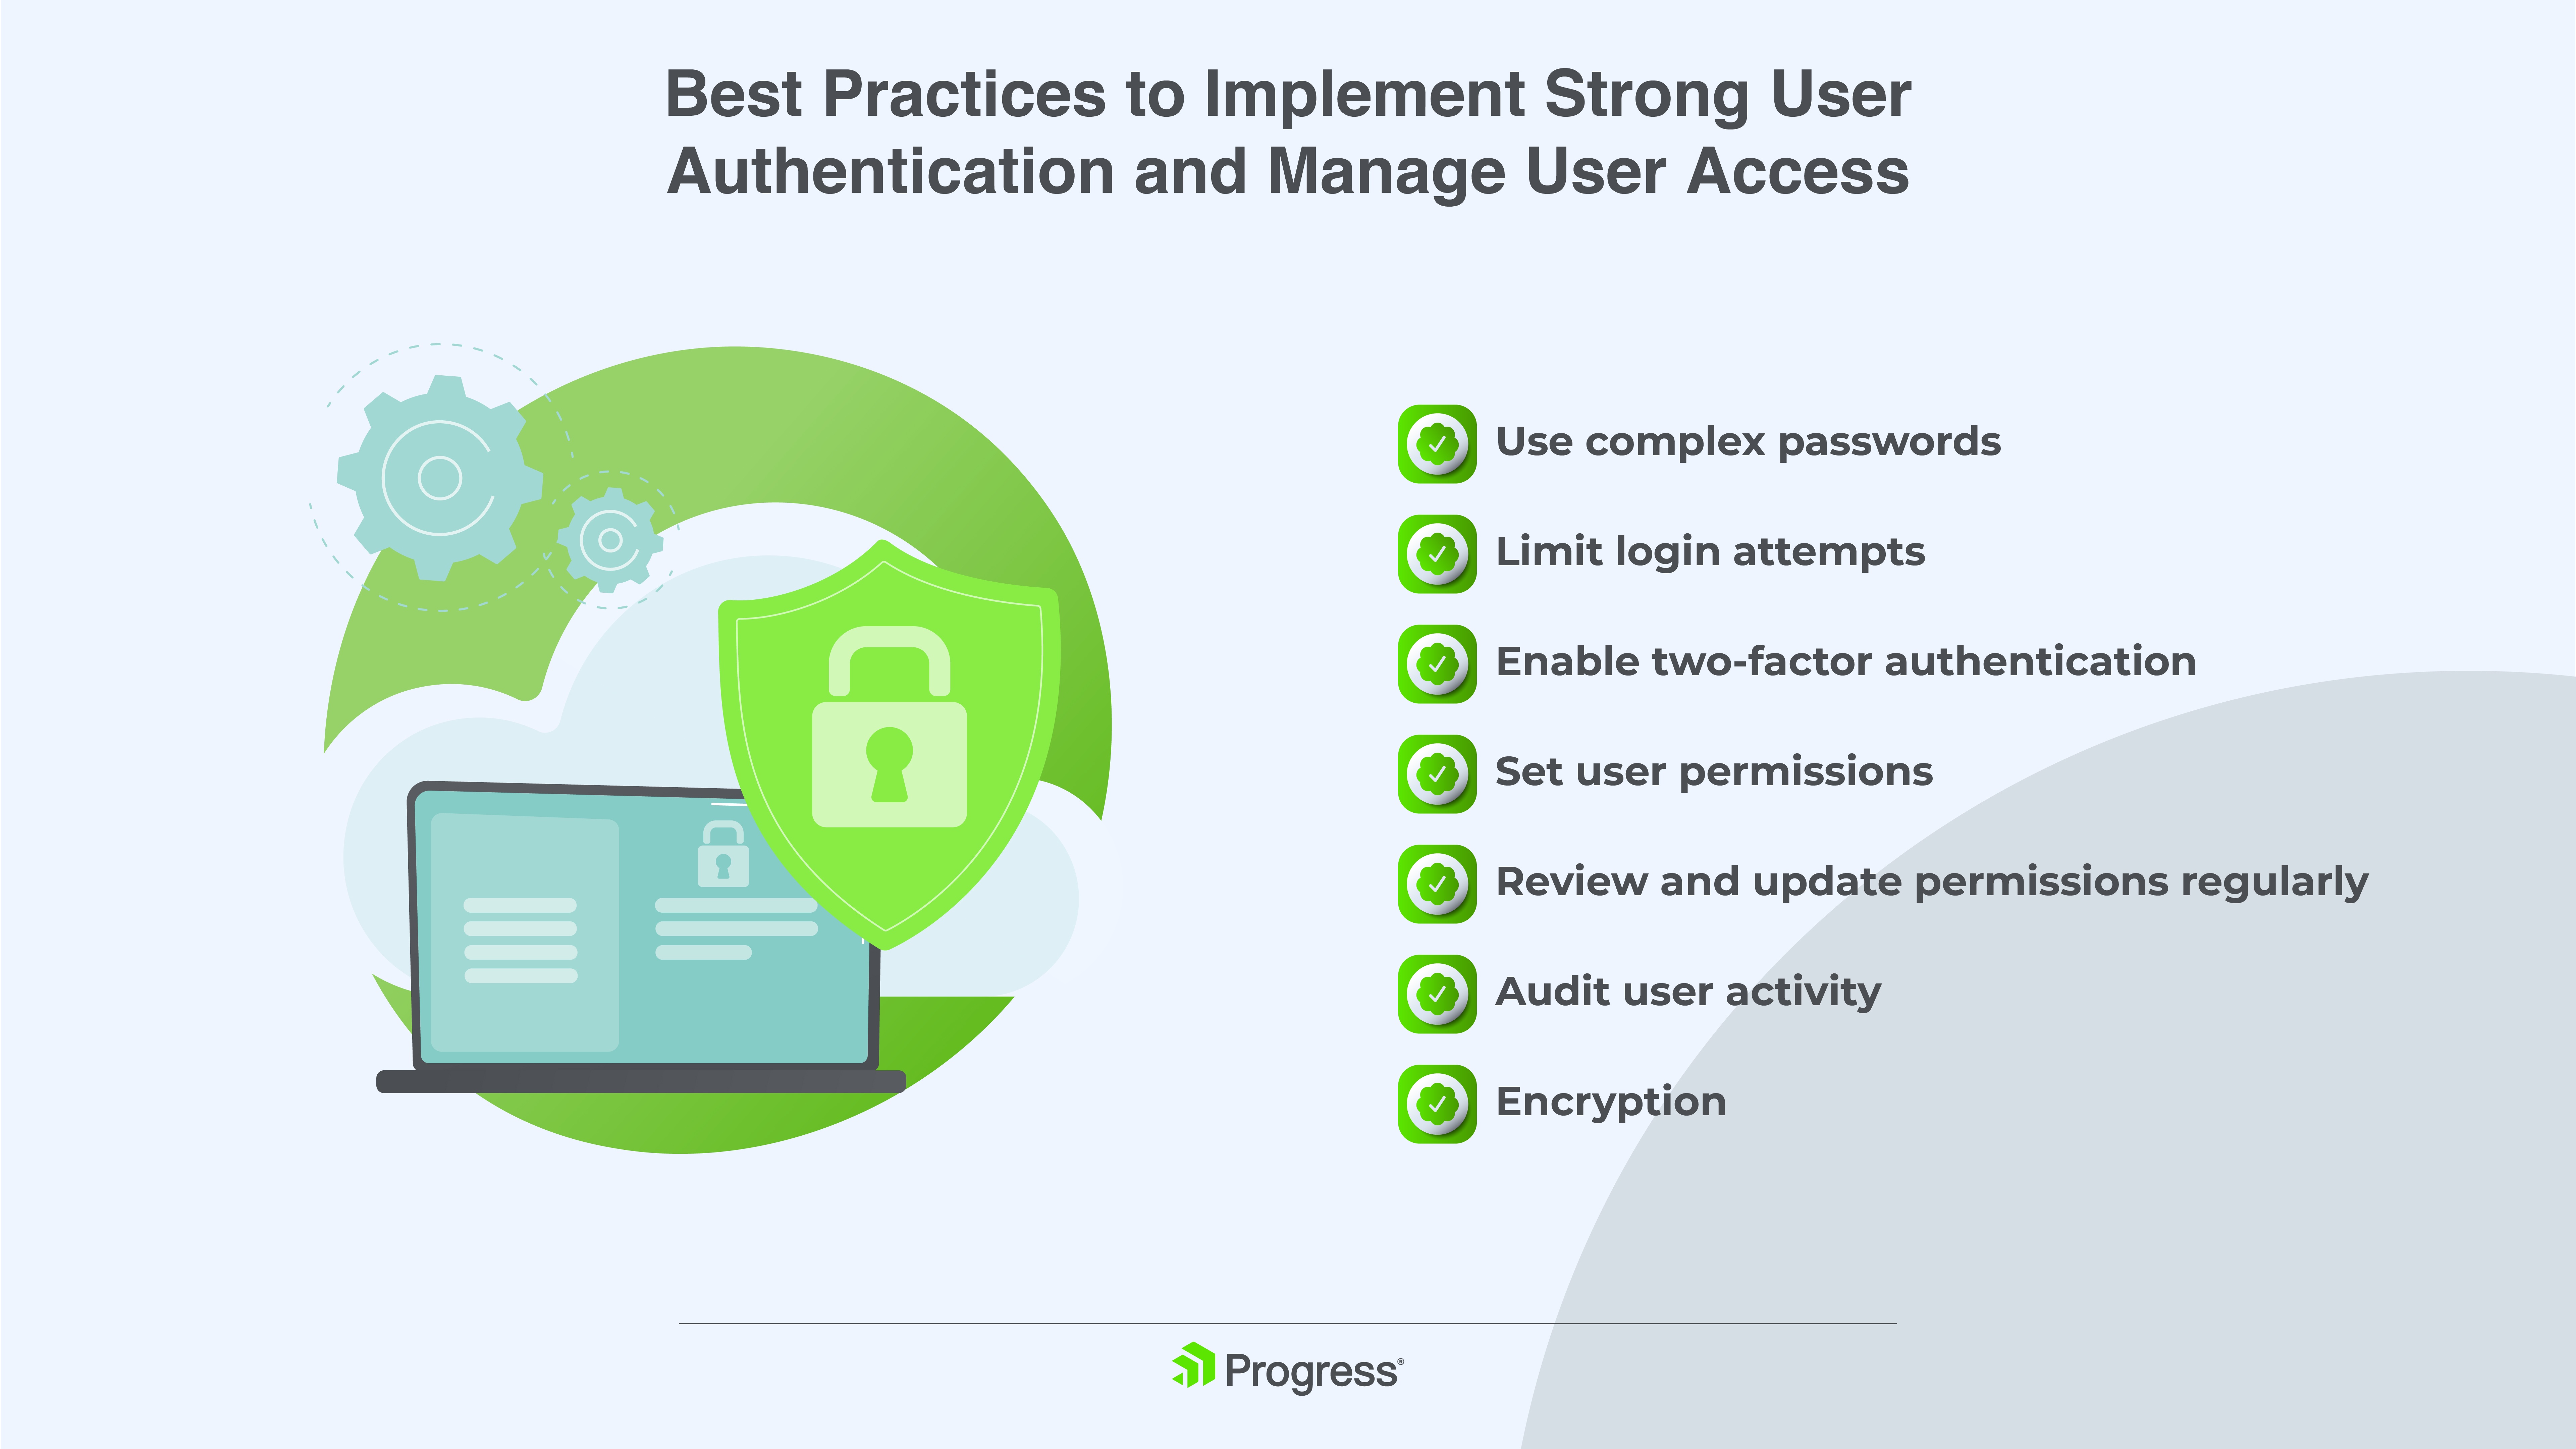 Frafik mit den 7 Punkten zu den Best Practices für die Implementierung einer starken Benutzerauthentifizierung und für die Verwaltung des Benutzerzugriffs